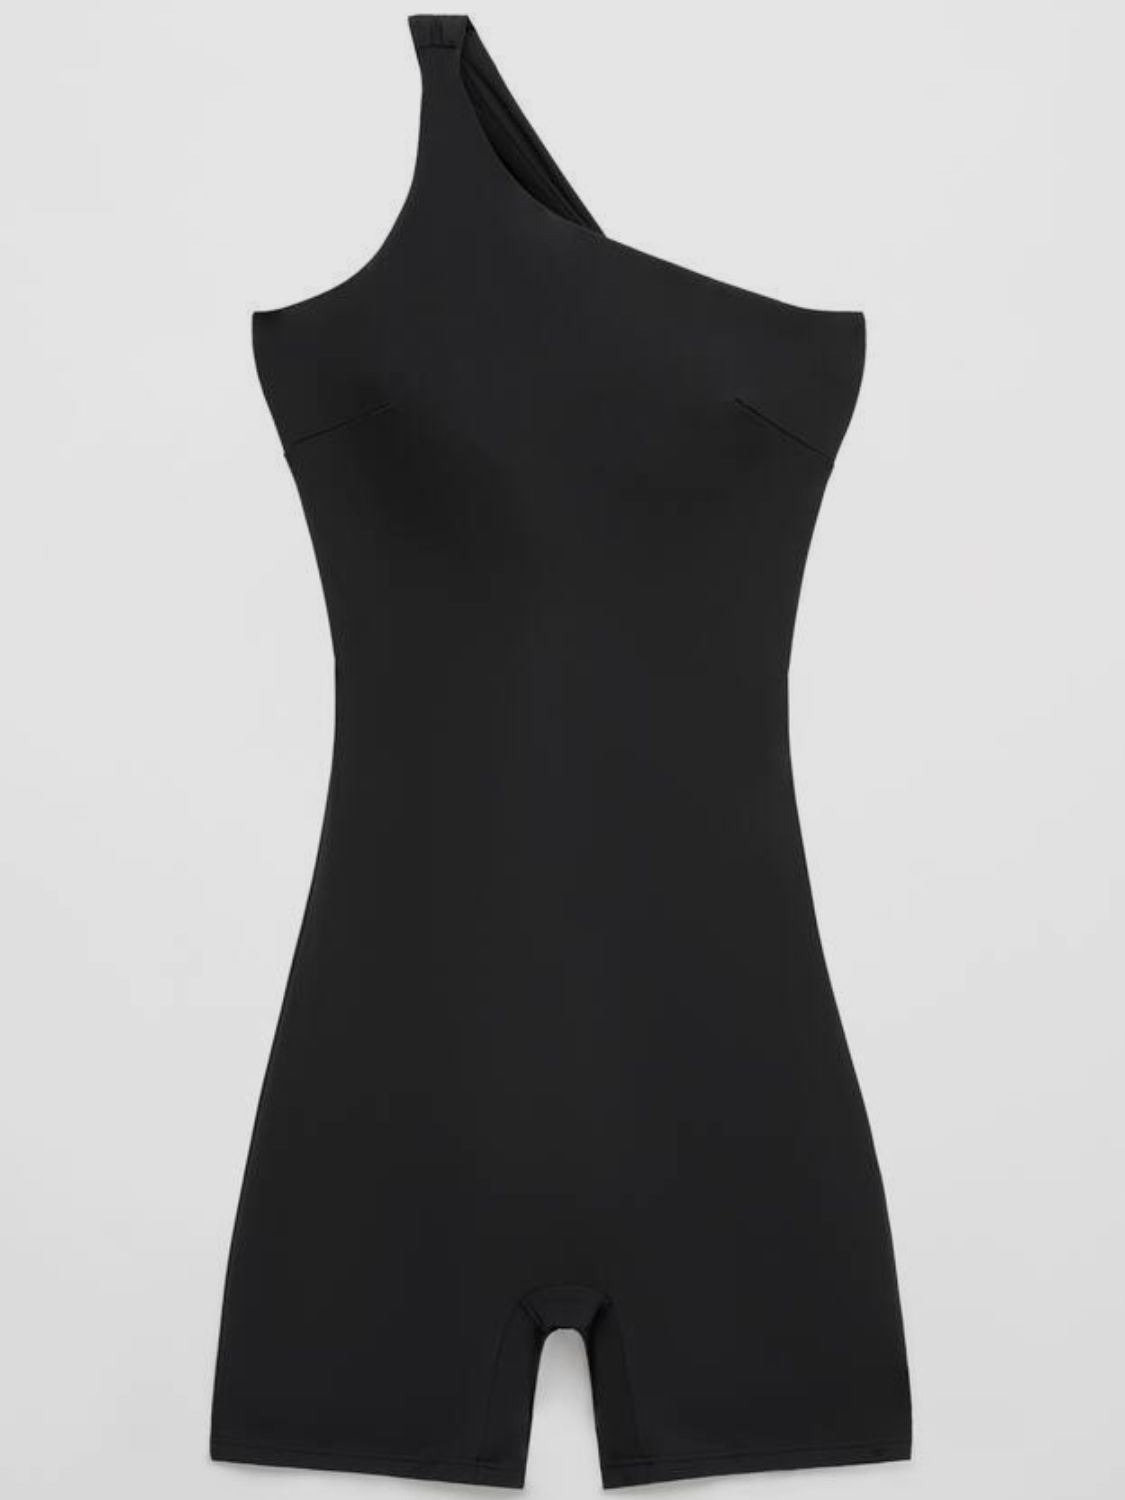 TEEK - Black Single Shoulder Active Shorts Romper JUMPSUIT TEEK Trend   